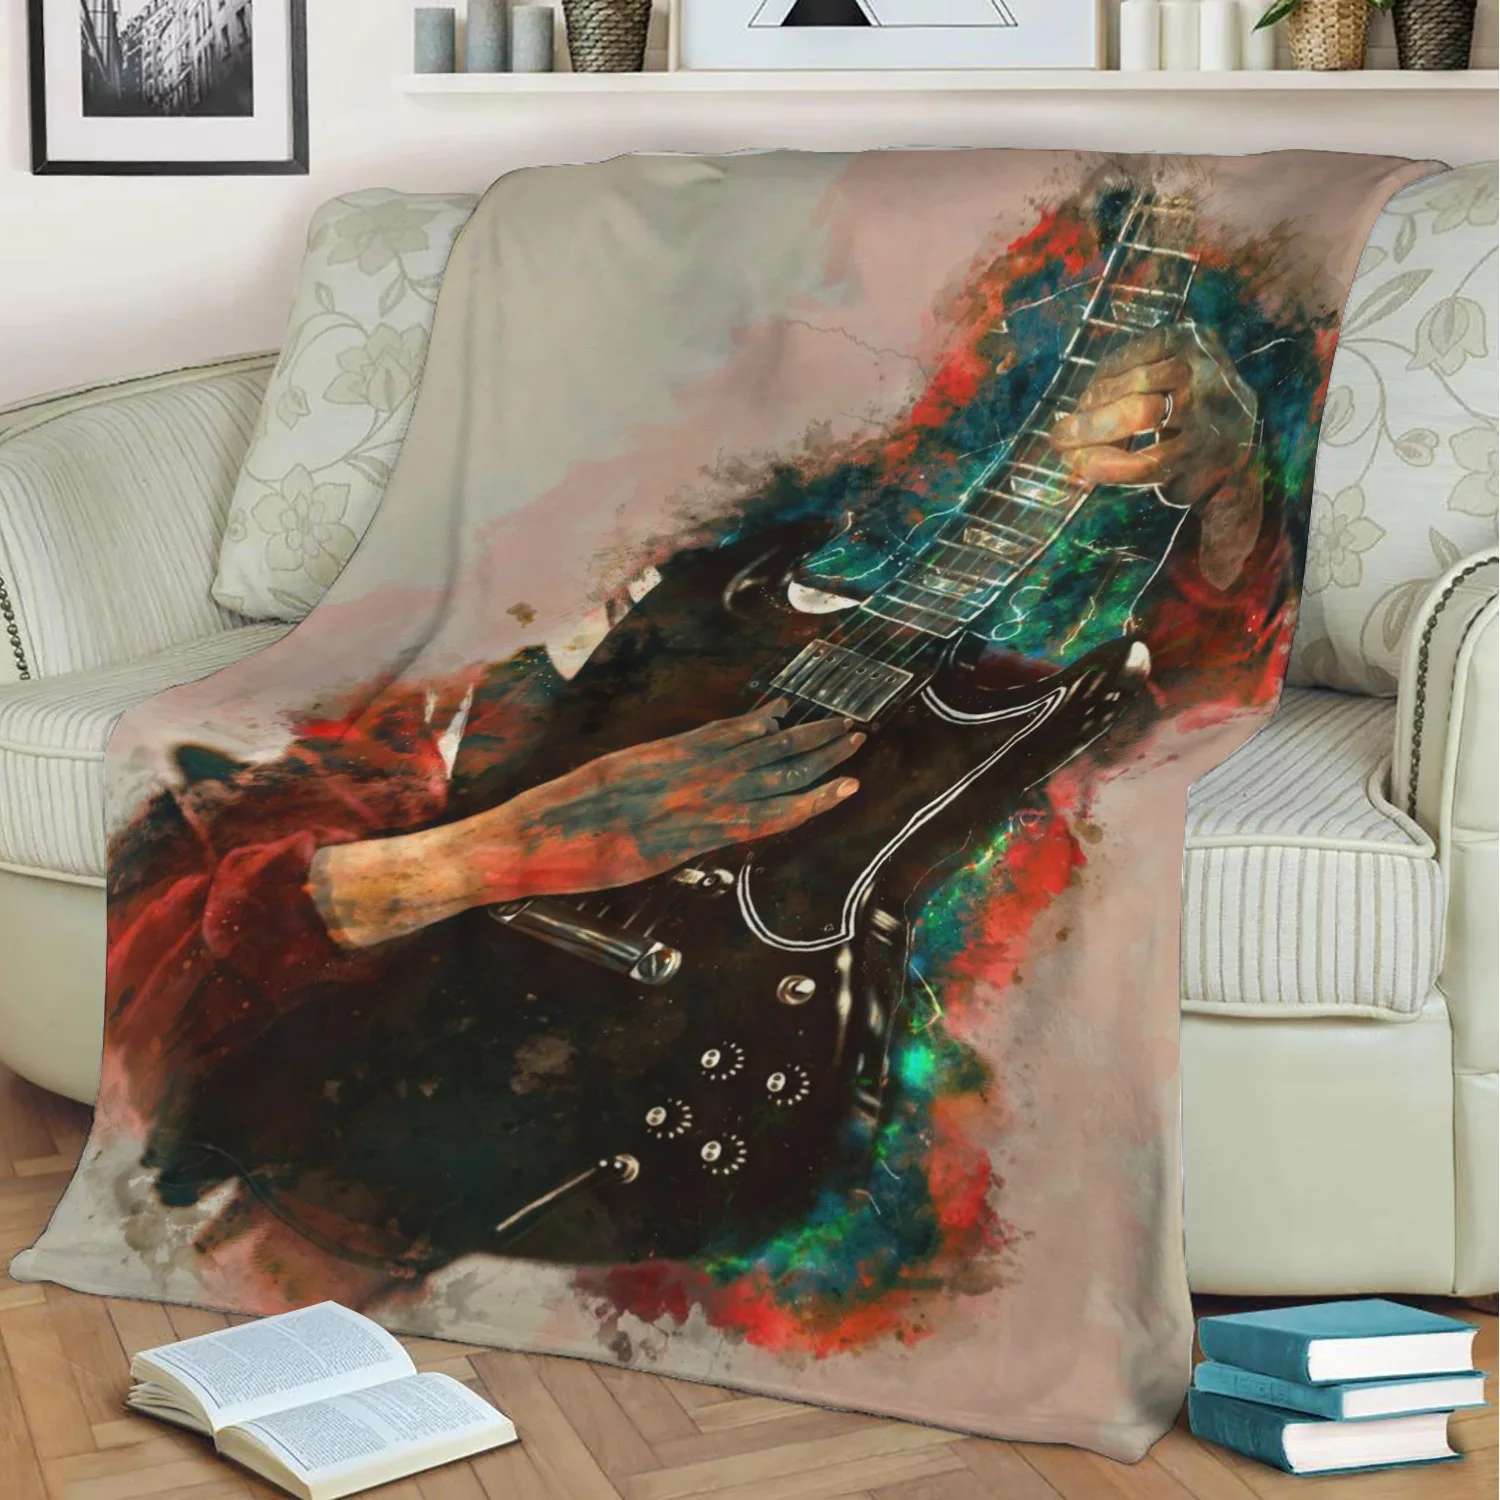 Angus Молодежная гитара 3D печать плюшевое одеяло накидка на диван домашний декор